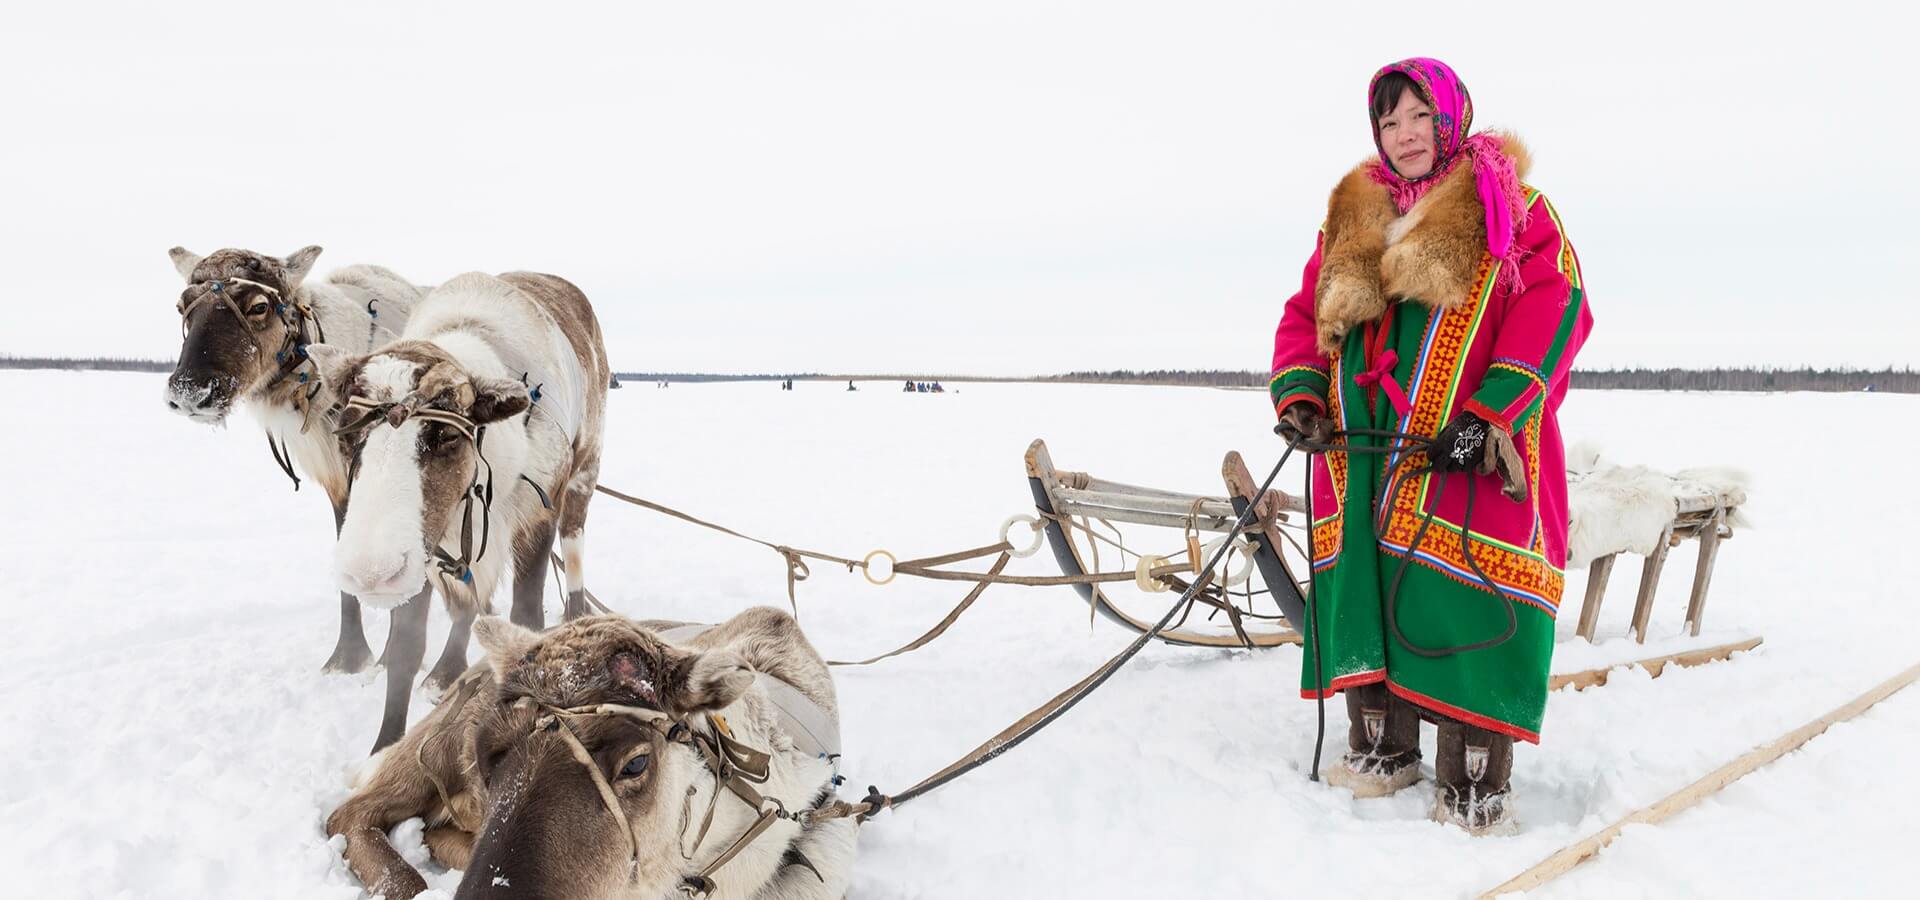 Retrato mujer indígena de Rusia junto a su trineo